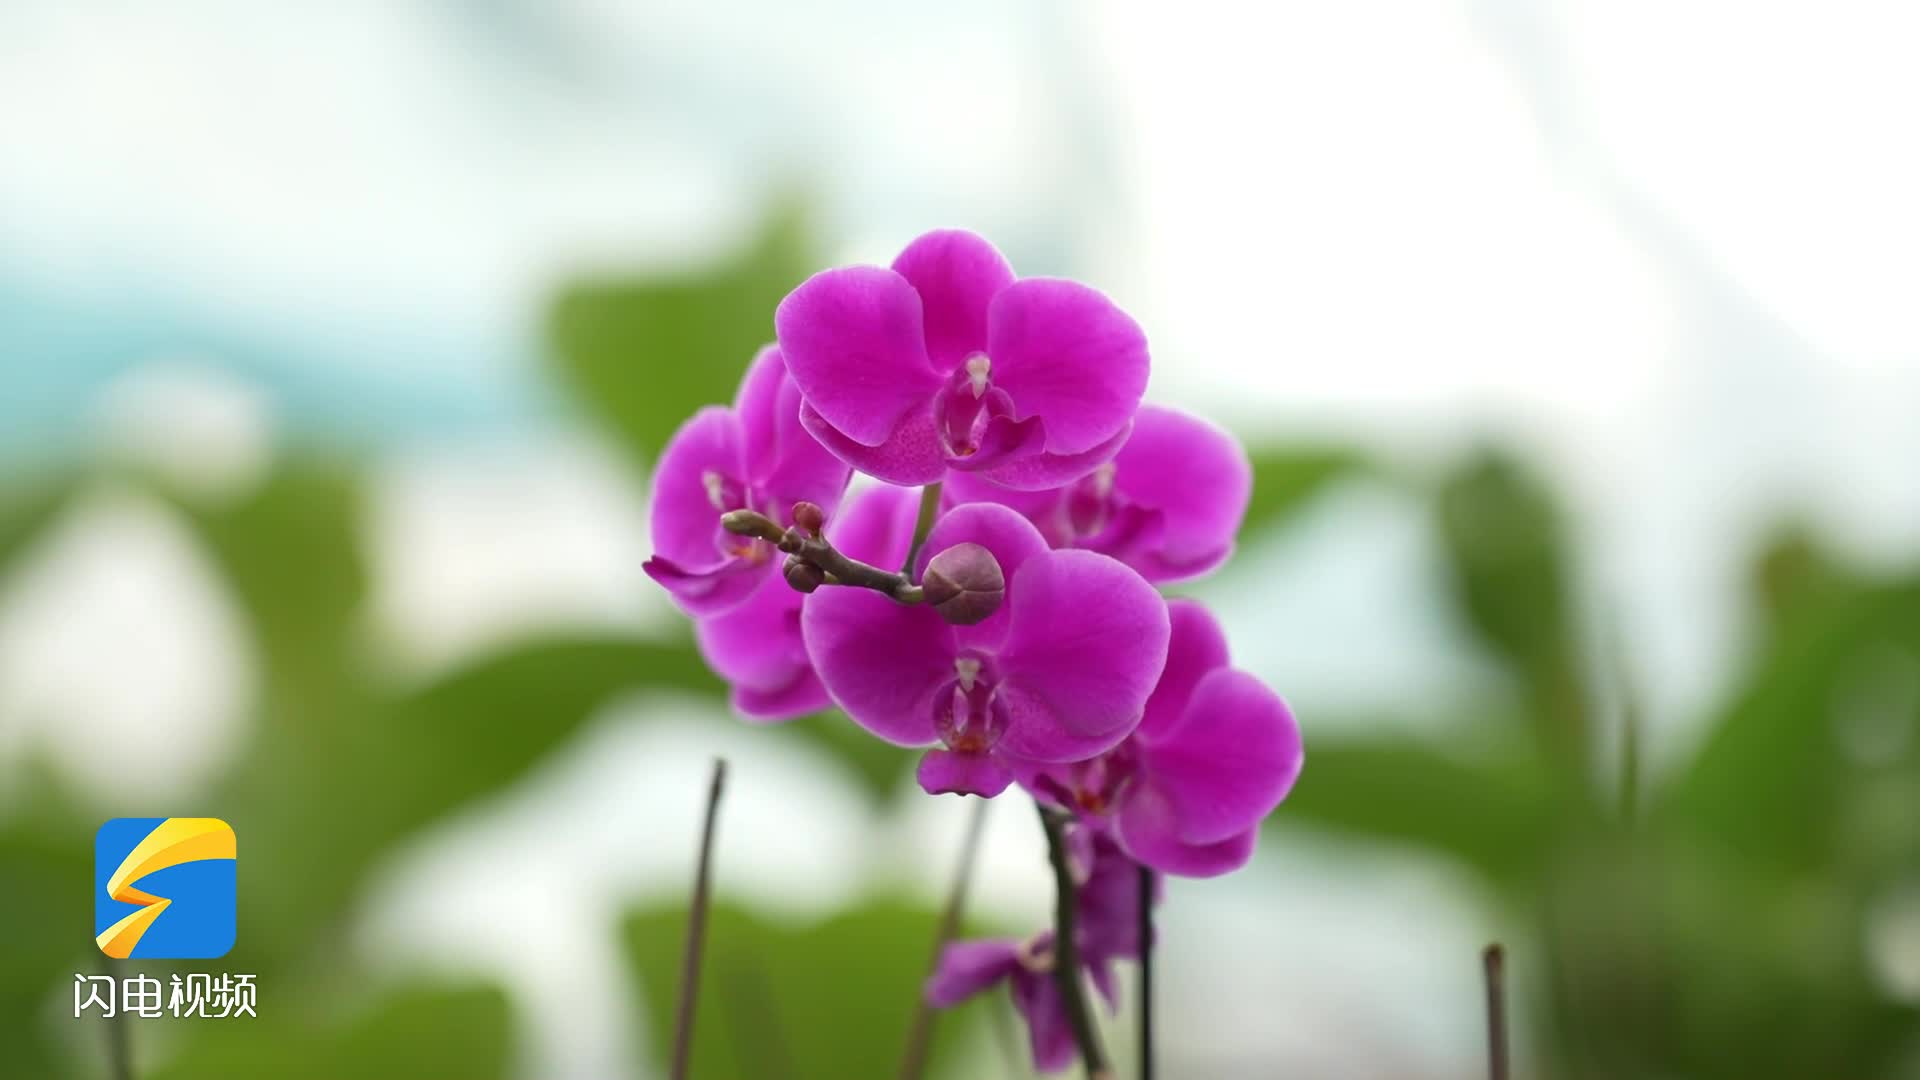 春序正中 百花争望！一起欣赏临沂花卉产业园的姹紫嫣红